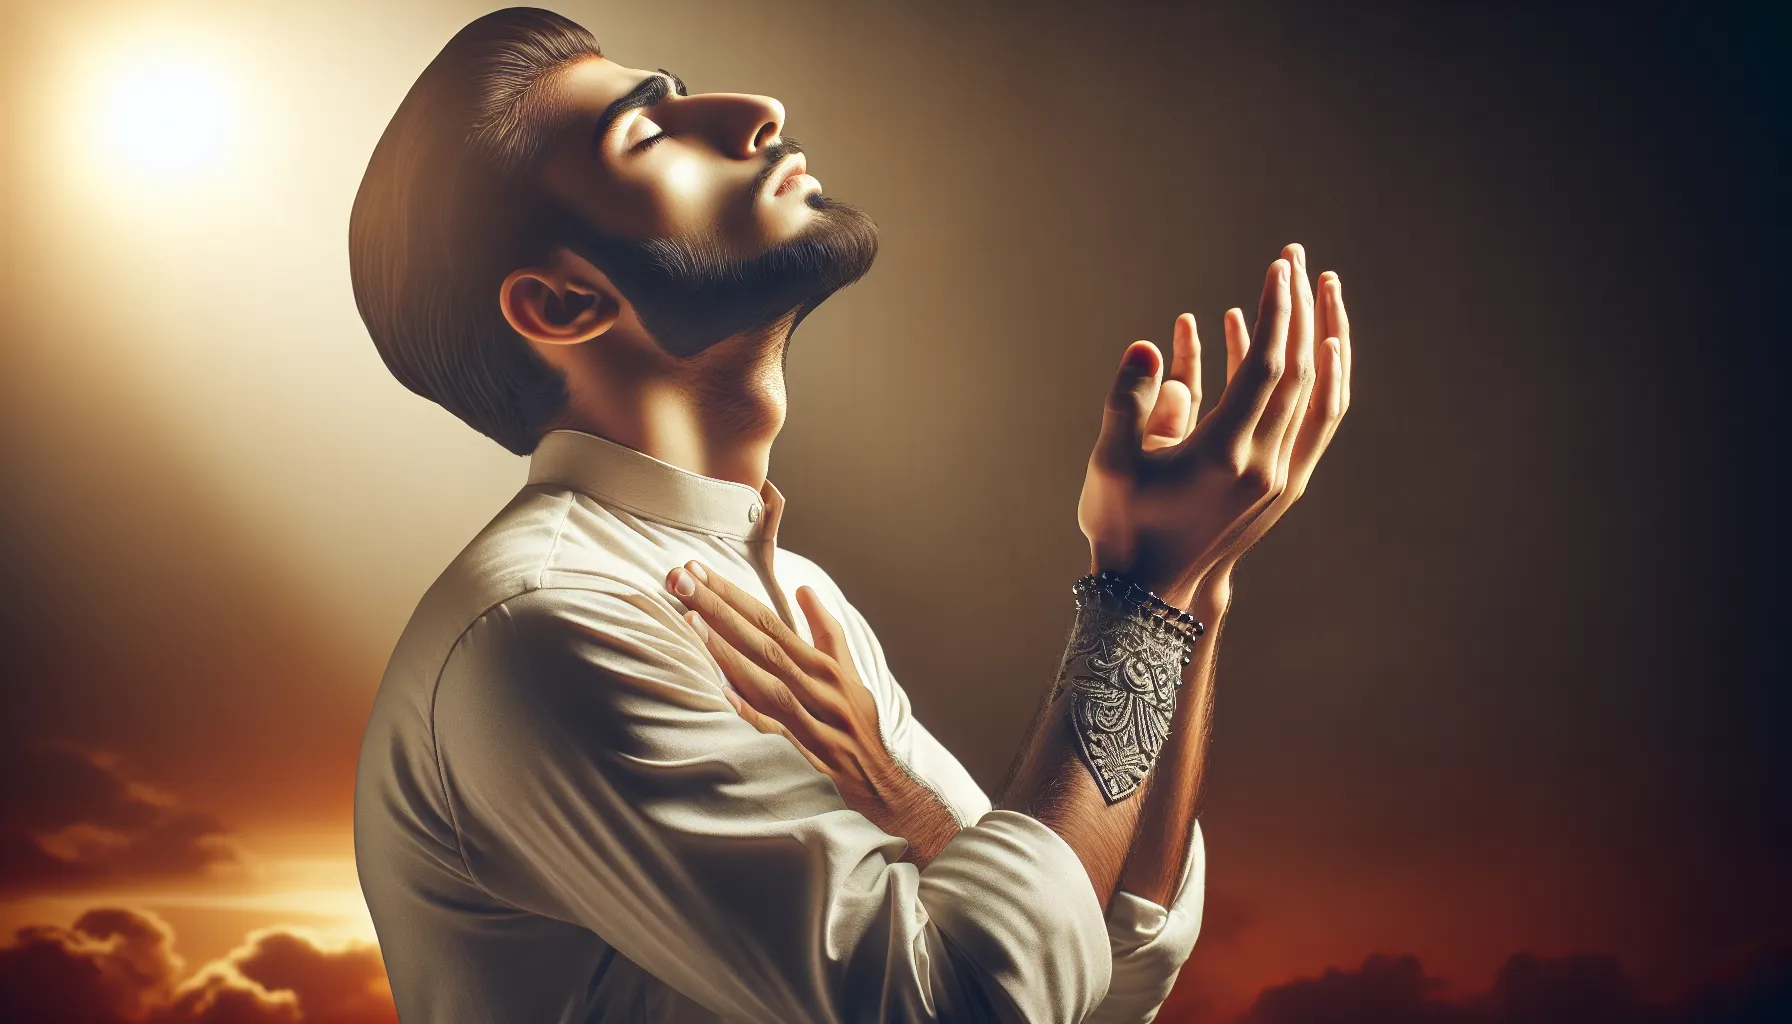 Imagen de una persona en oración con las manos elevadas al cielo